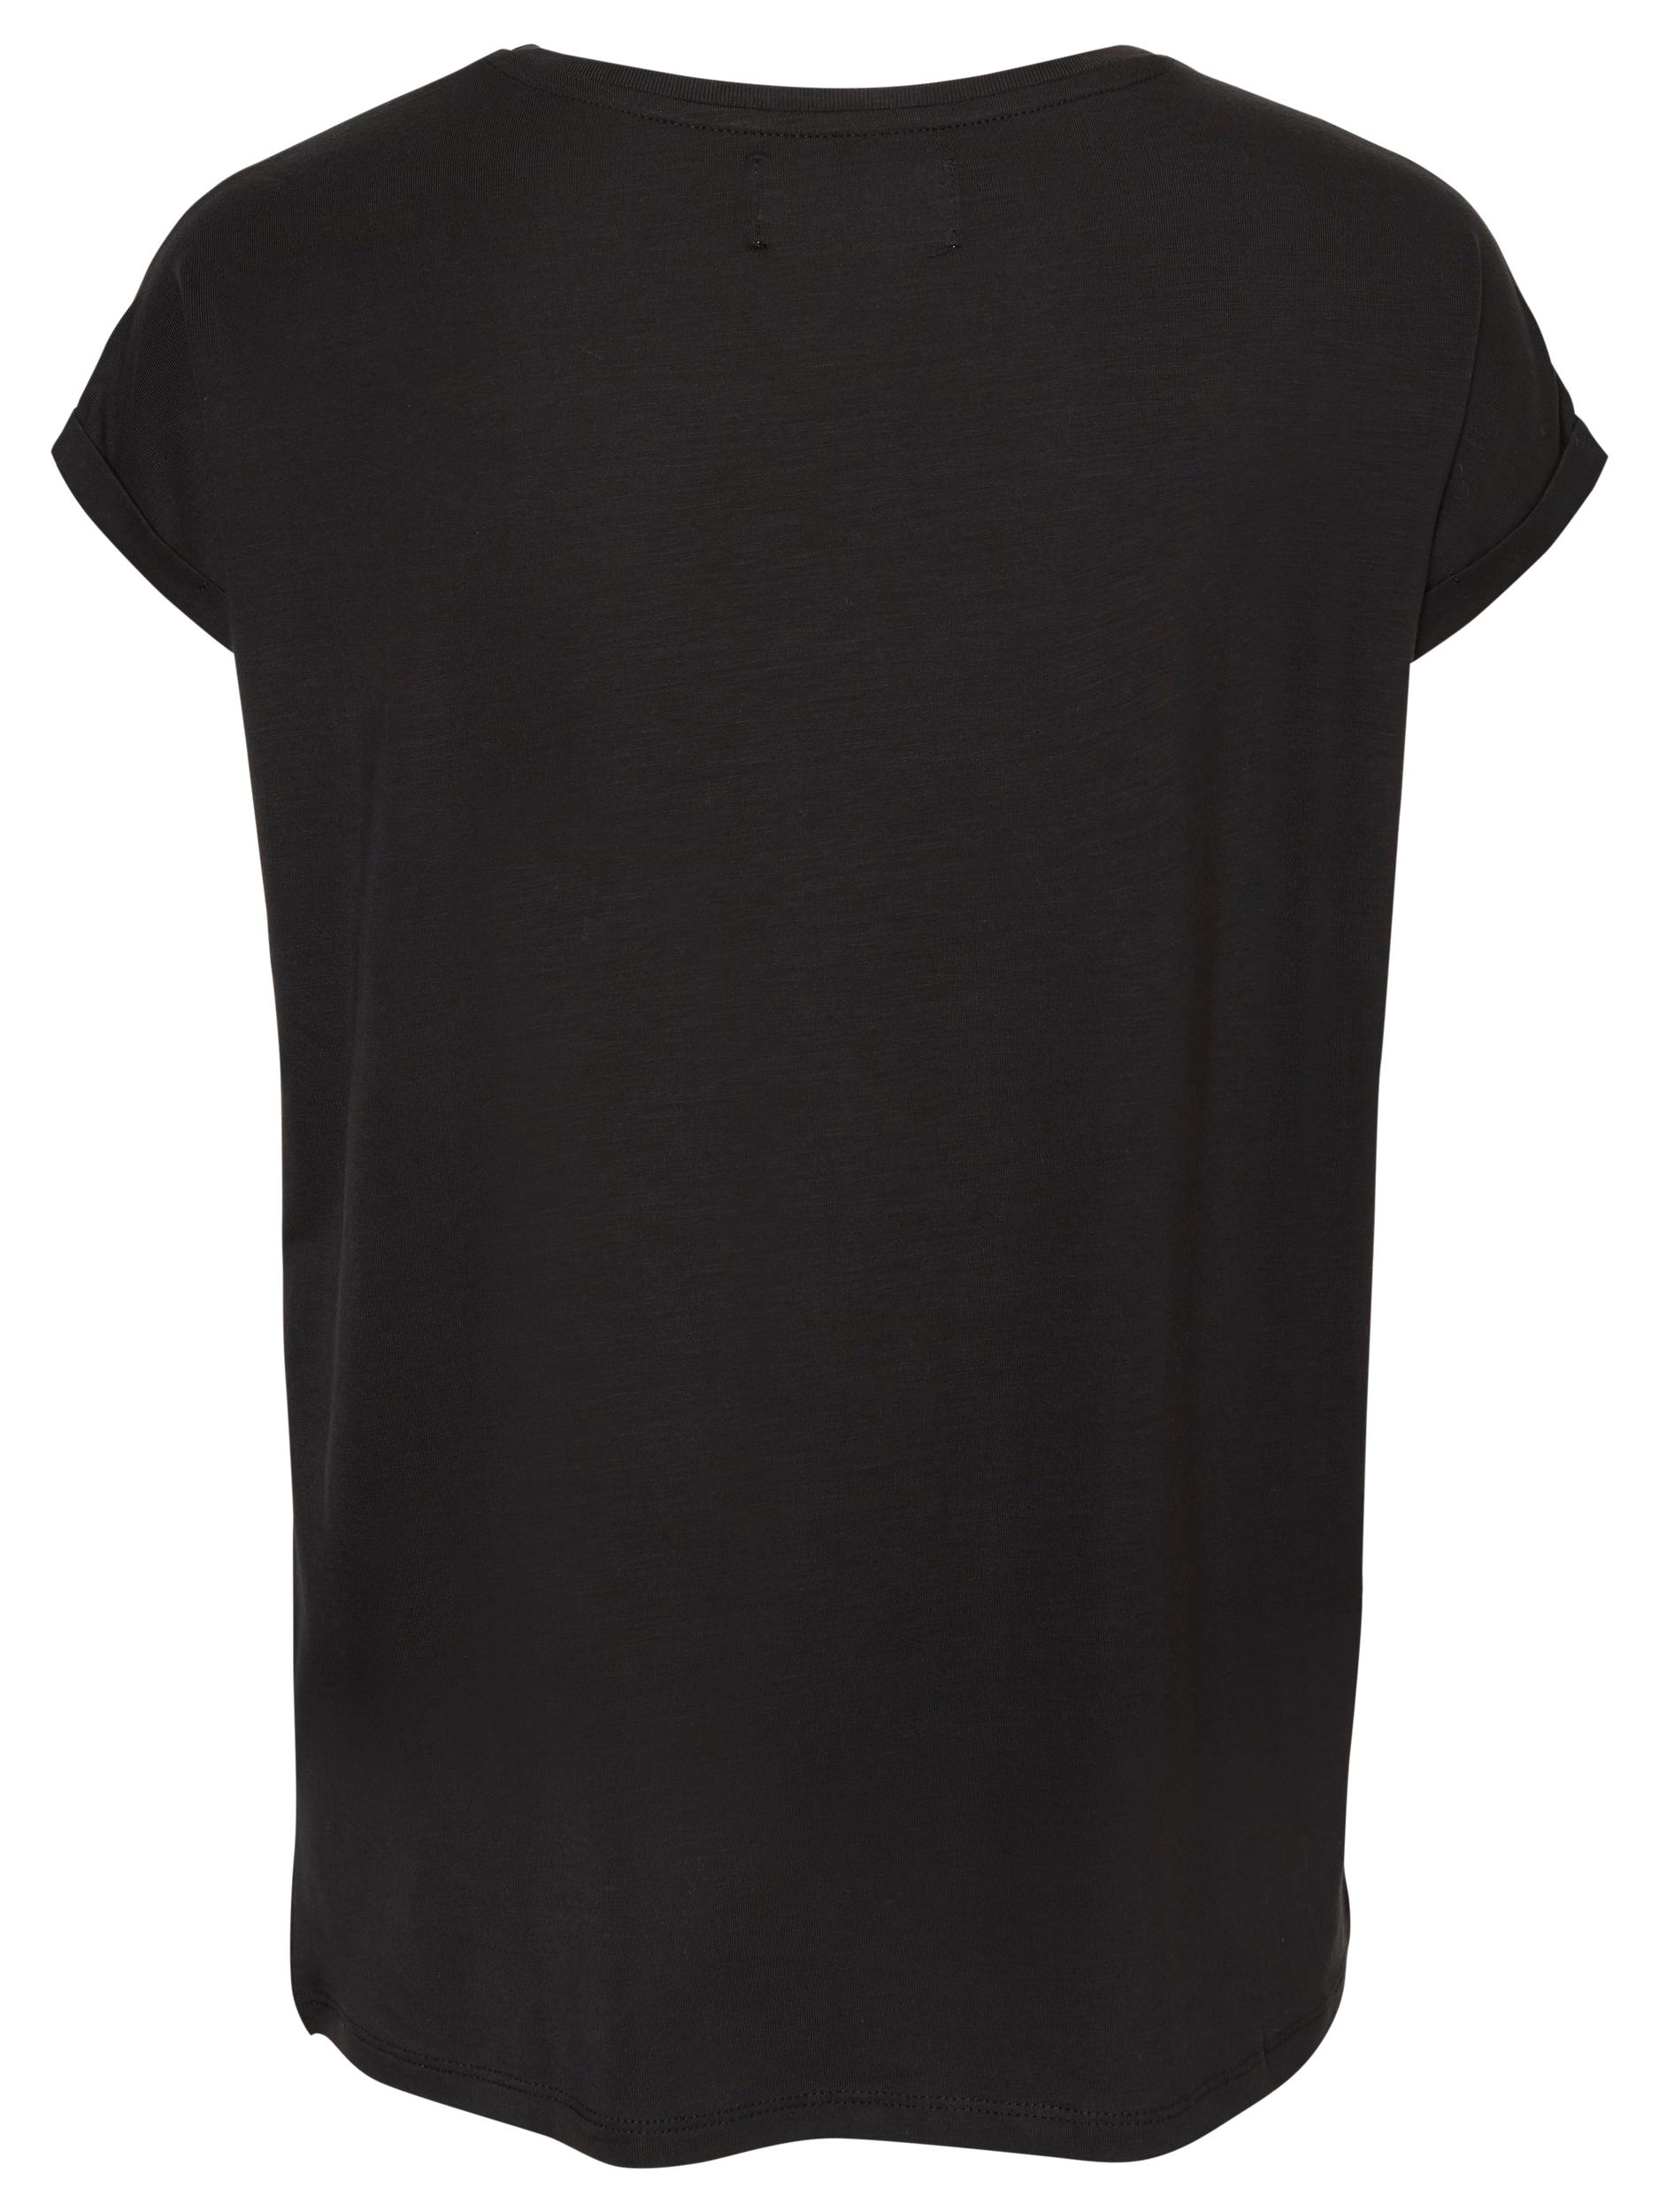 AWARE | Ava T-Shirt, BLACK, large